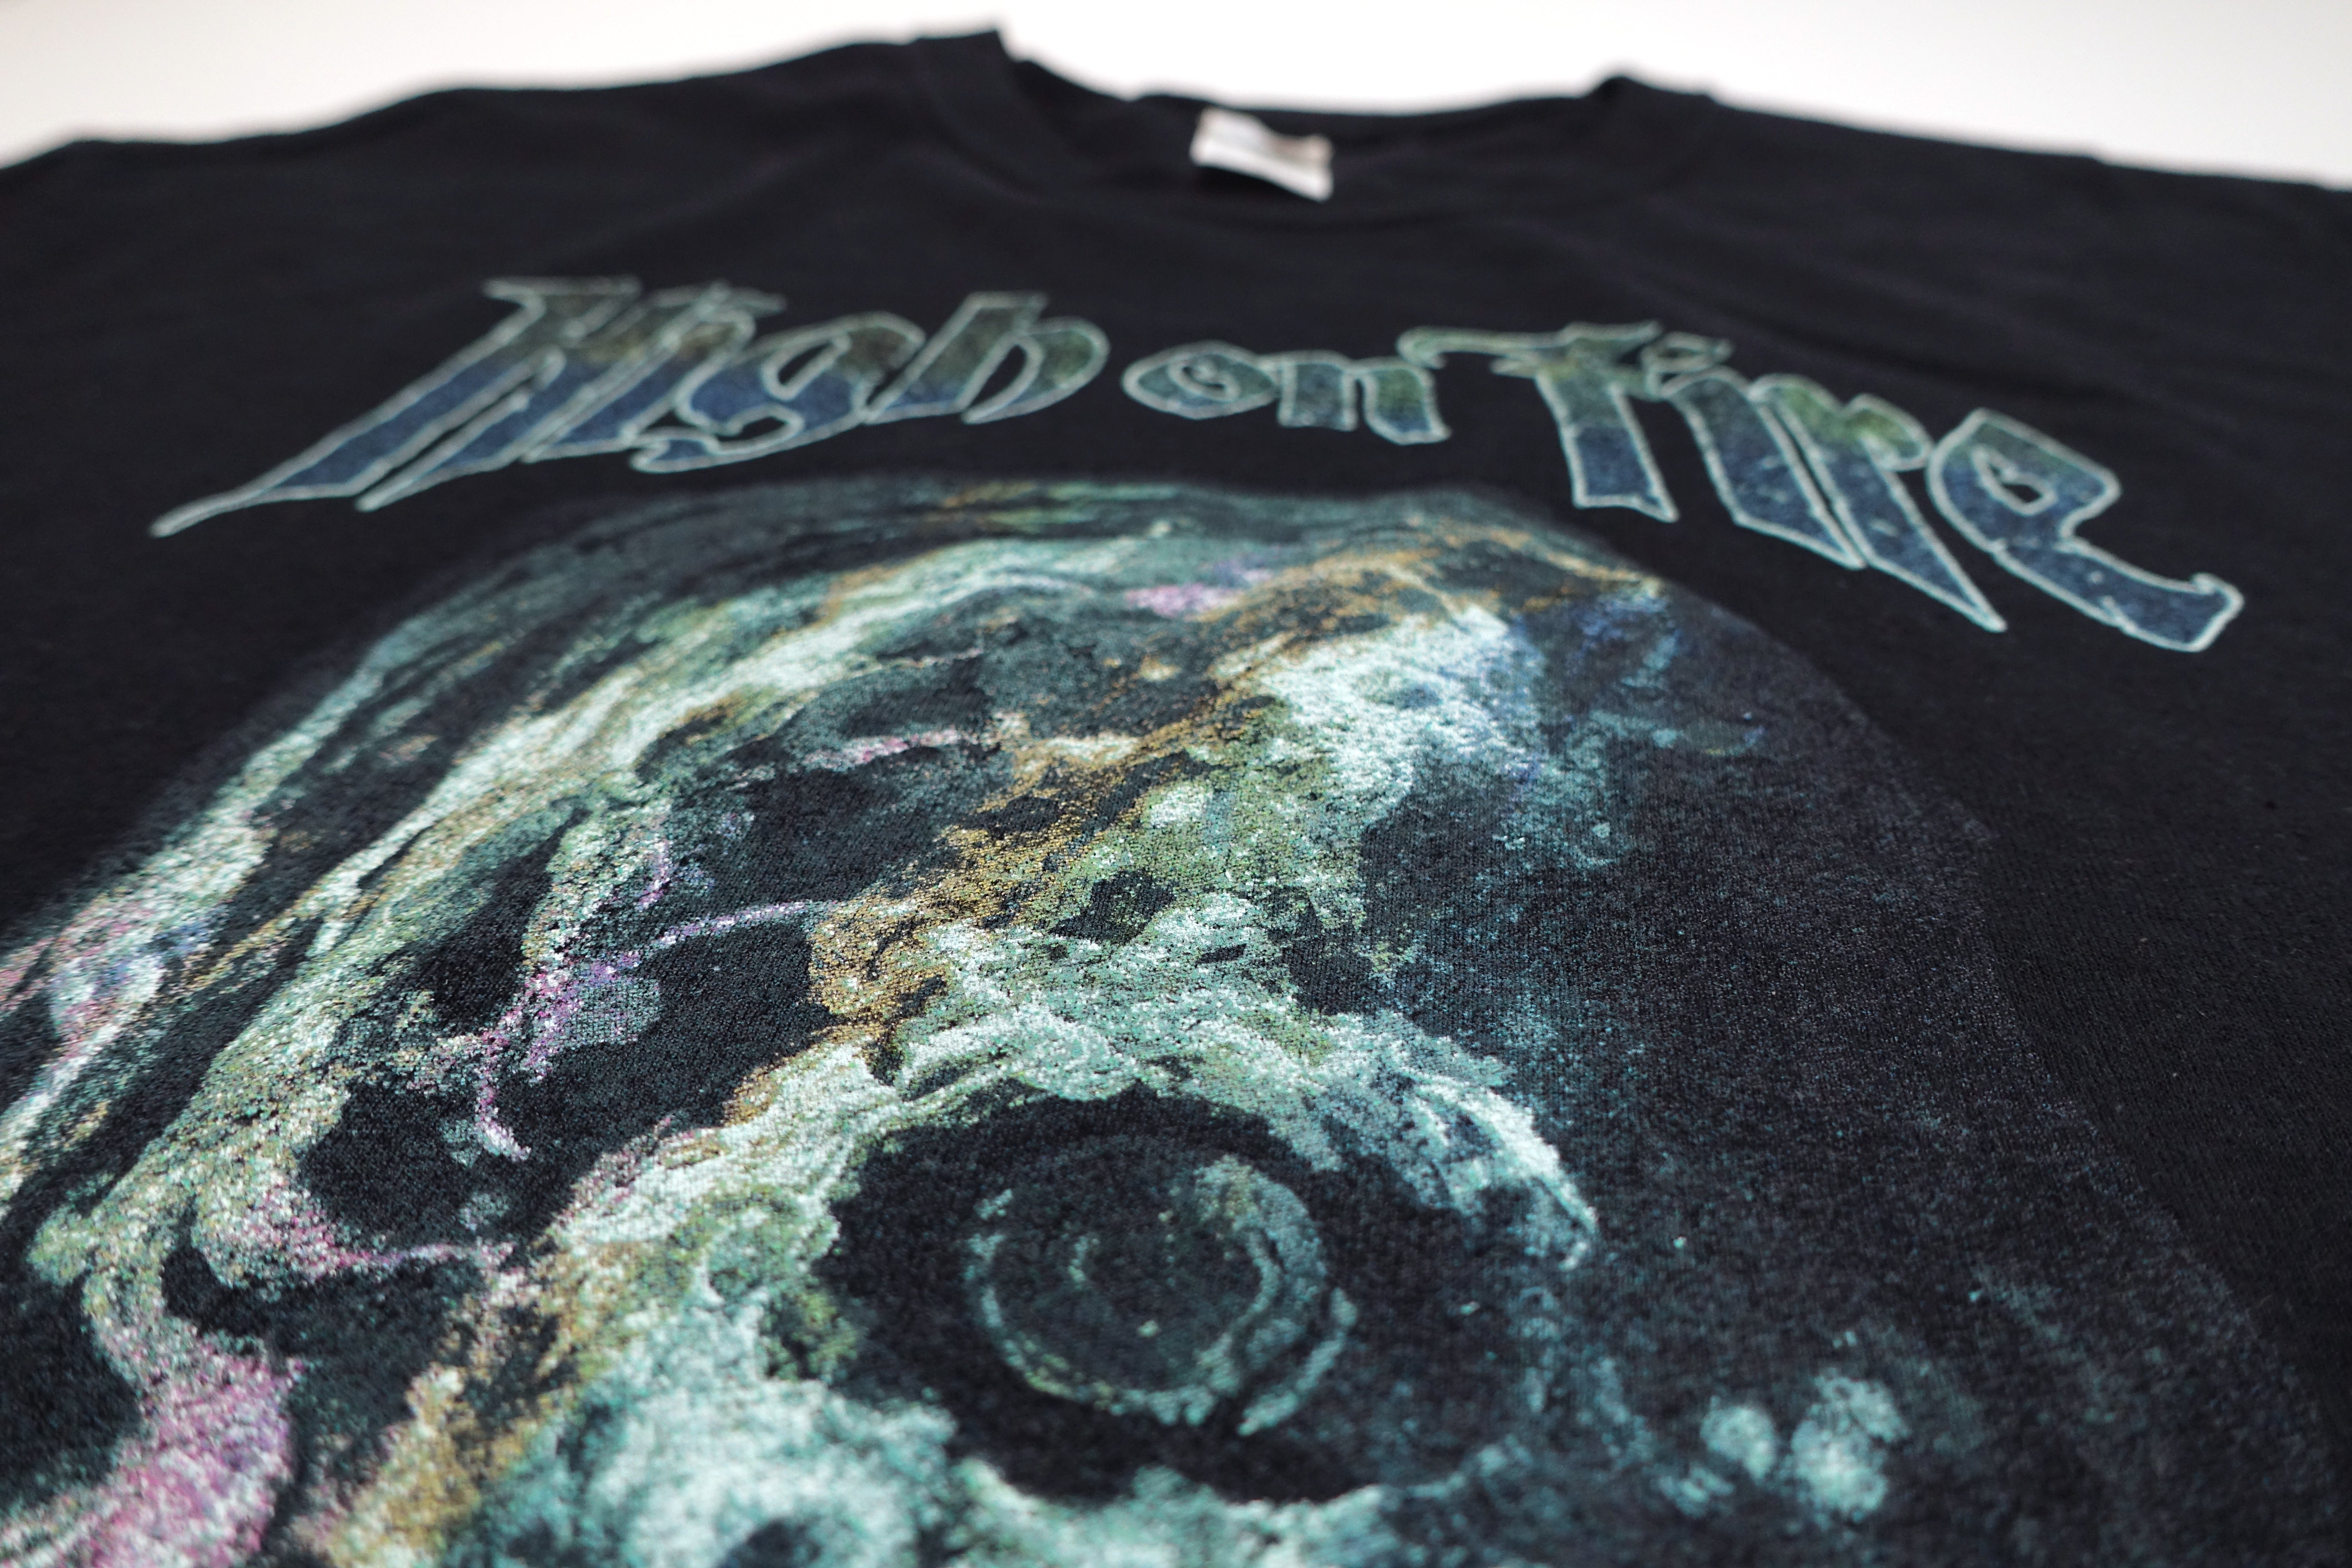 High On Fire - Skull Tour Shirt Size XL